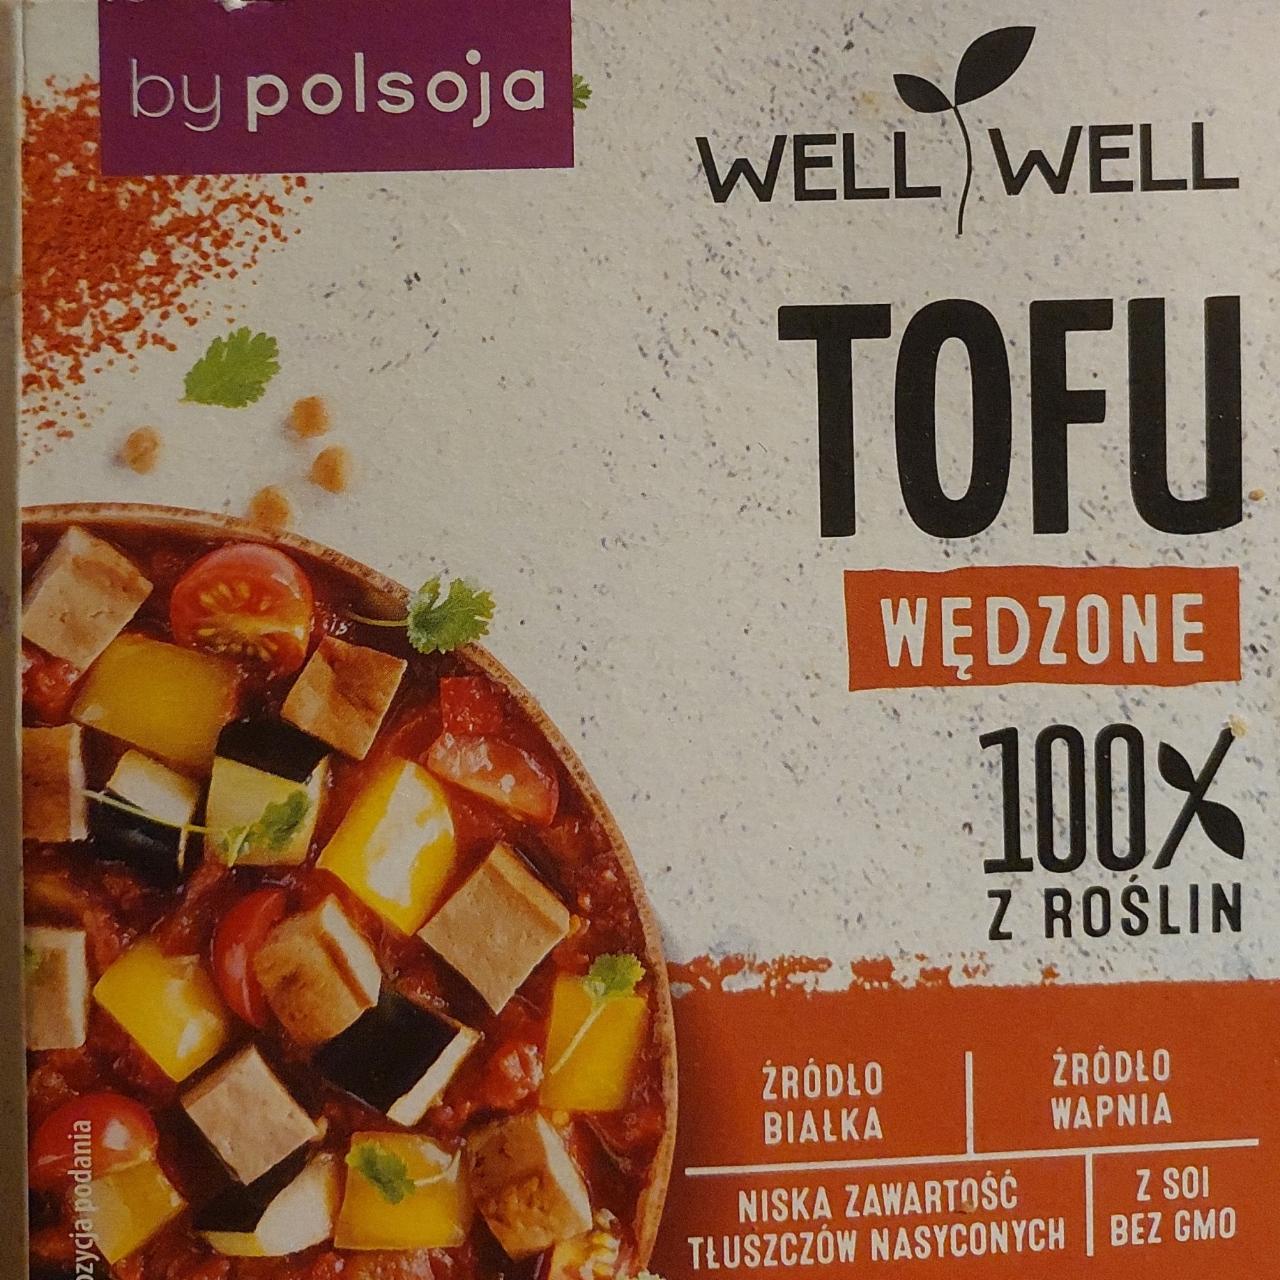 Zdjęcia - well well tofu wędzone by polsoja